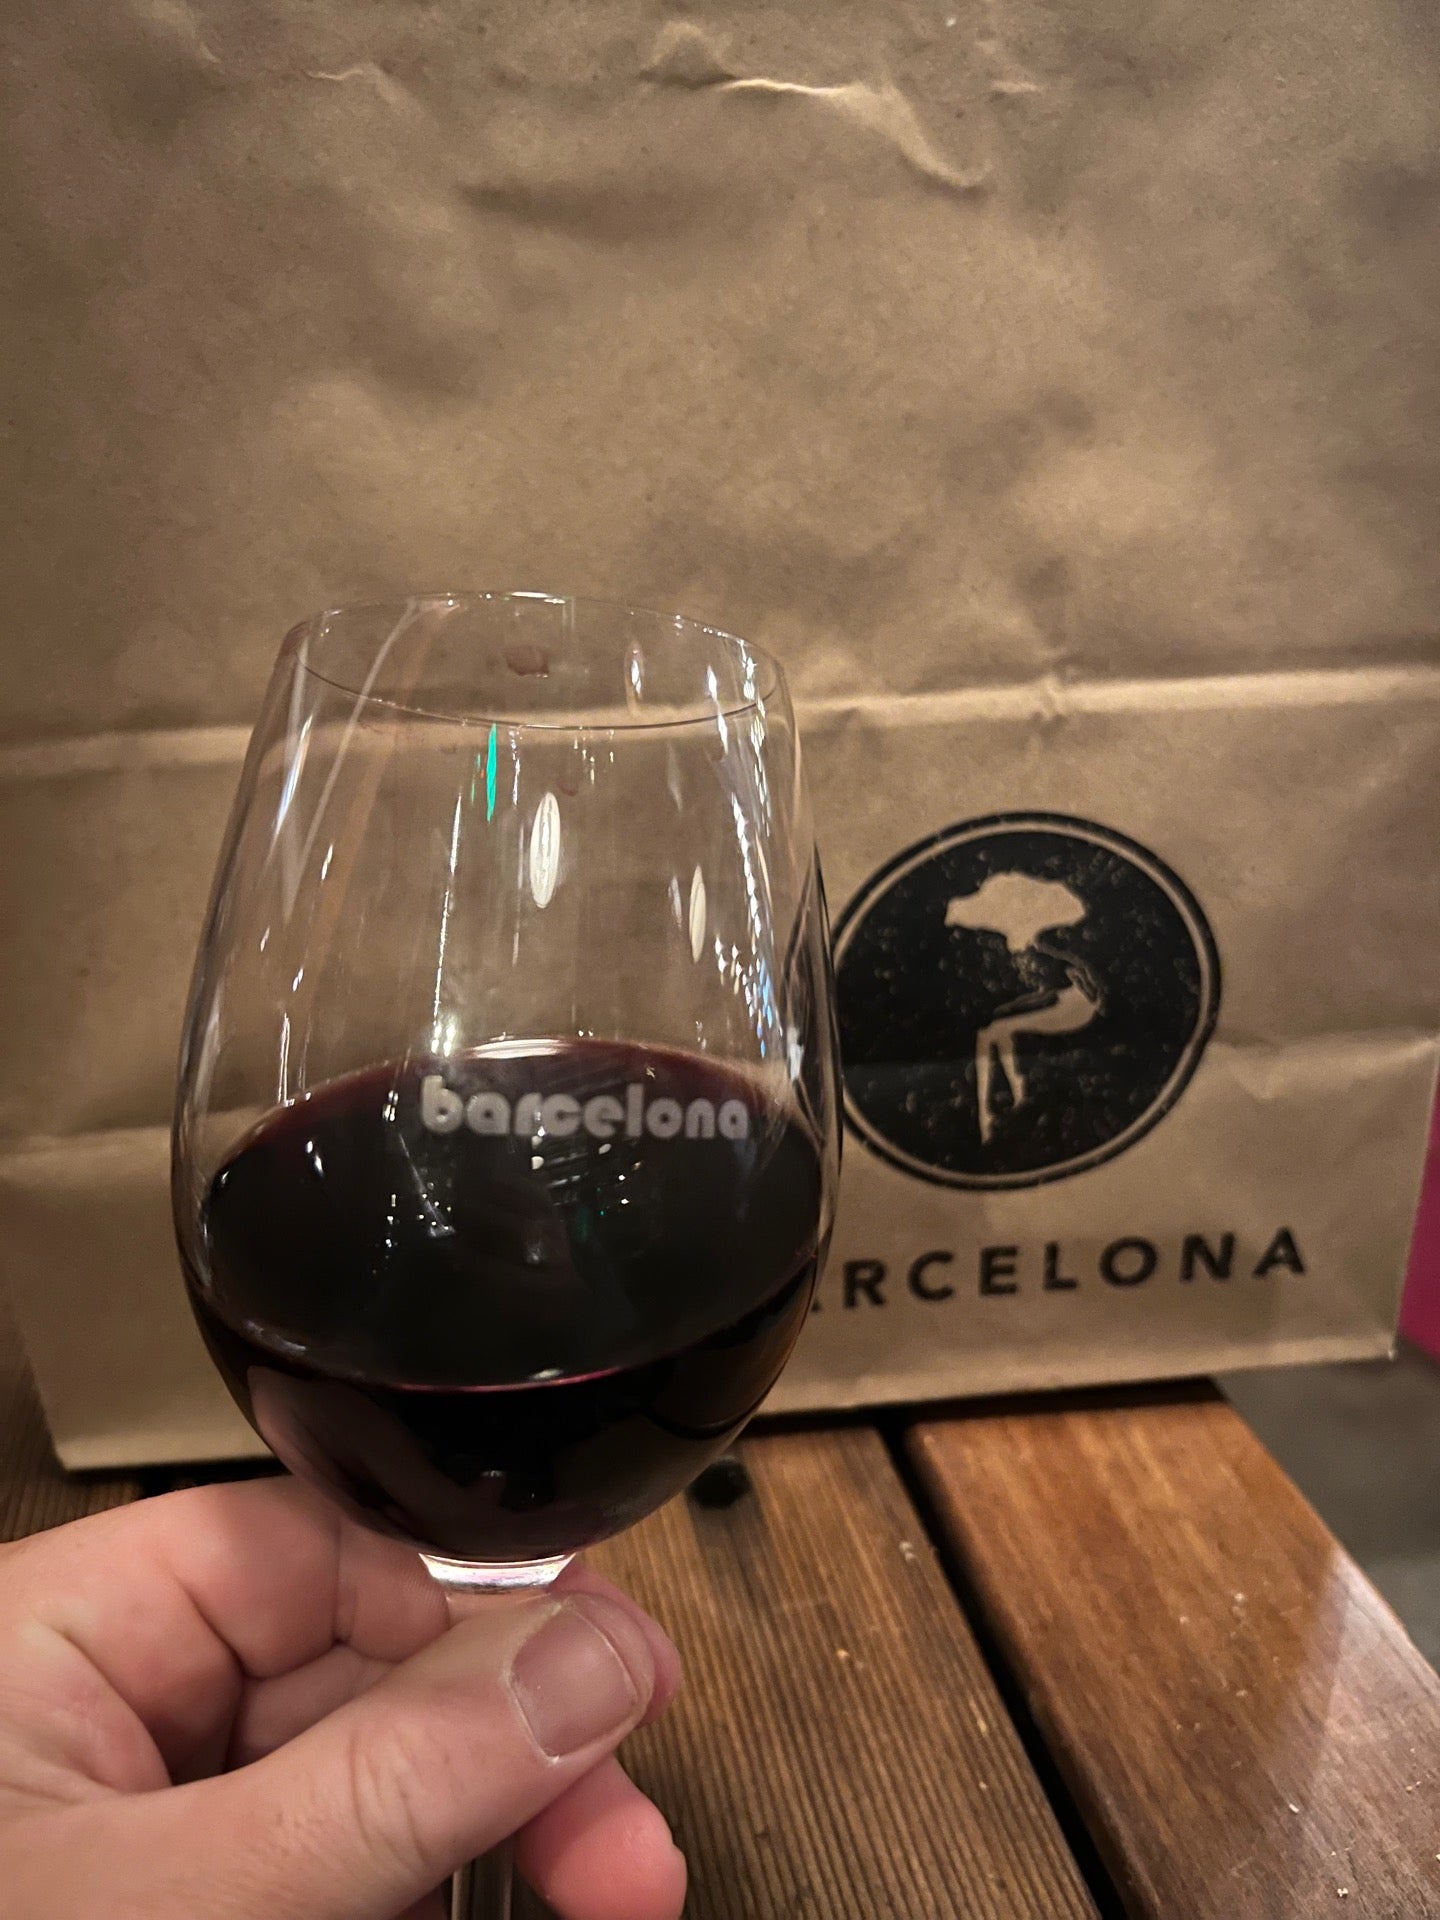 Barcelona Wine Bar